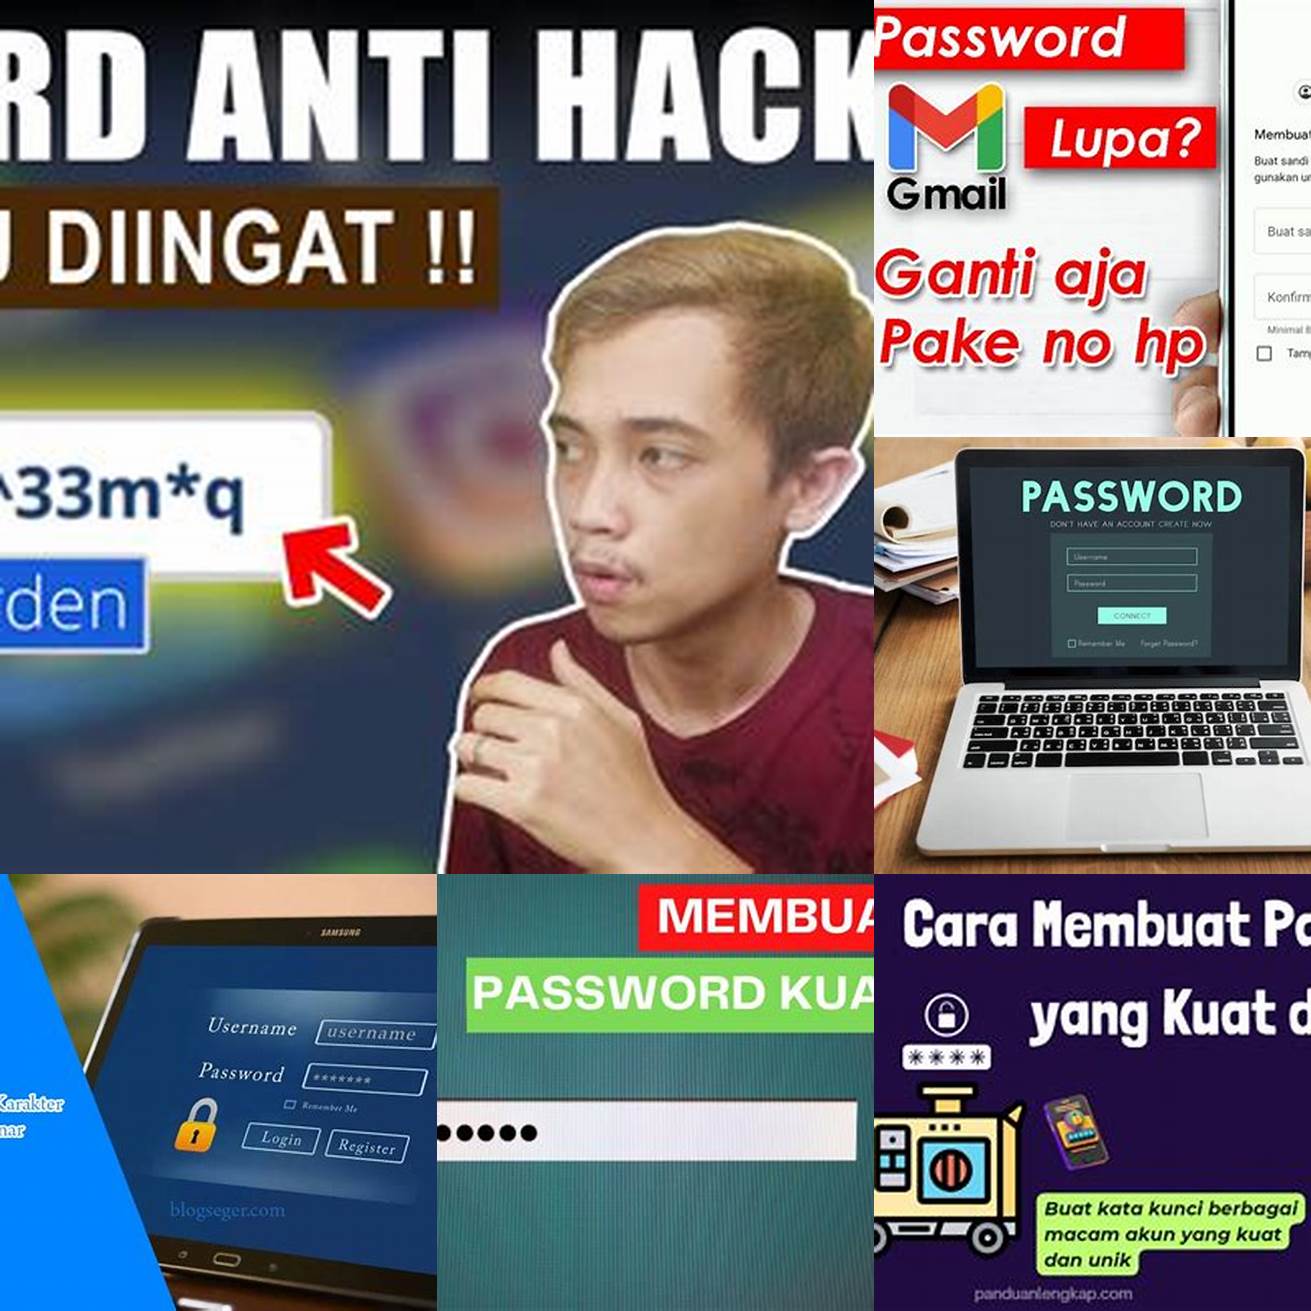 Gunakan password yang kuat di HP kamu